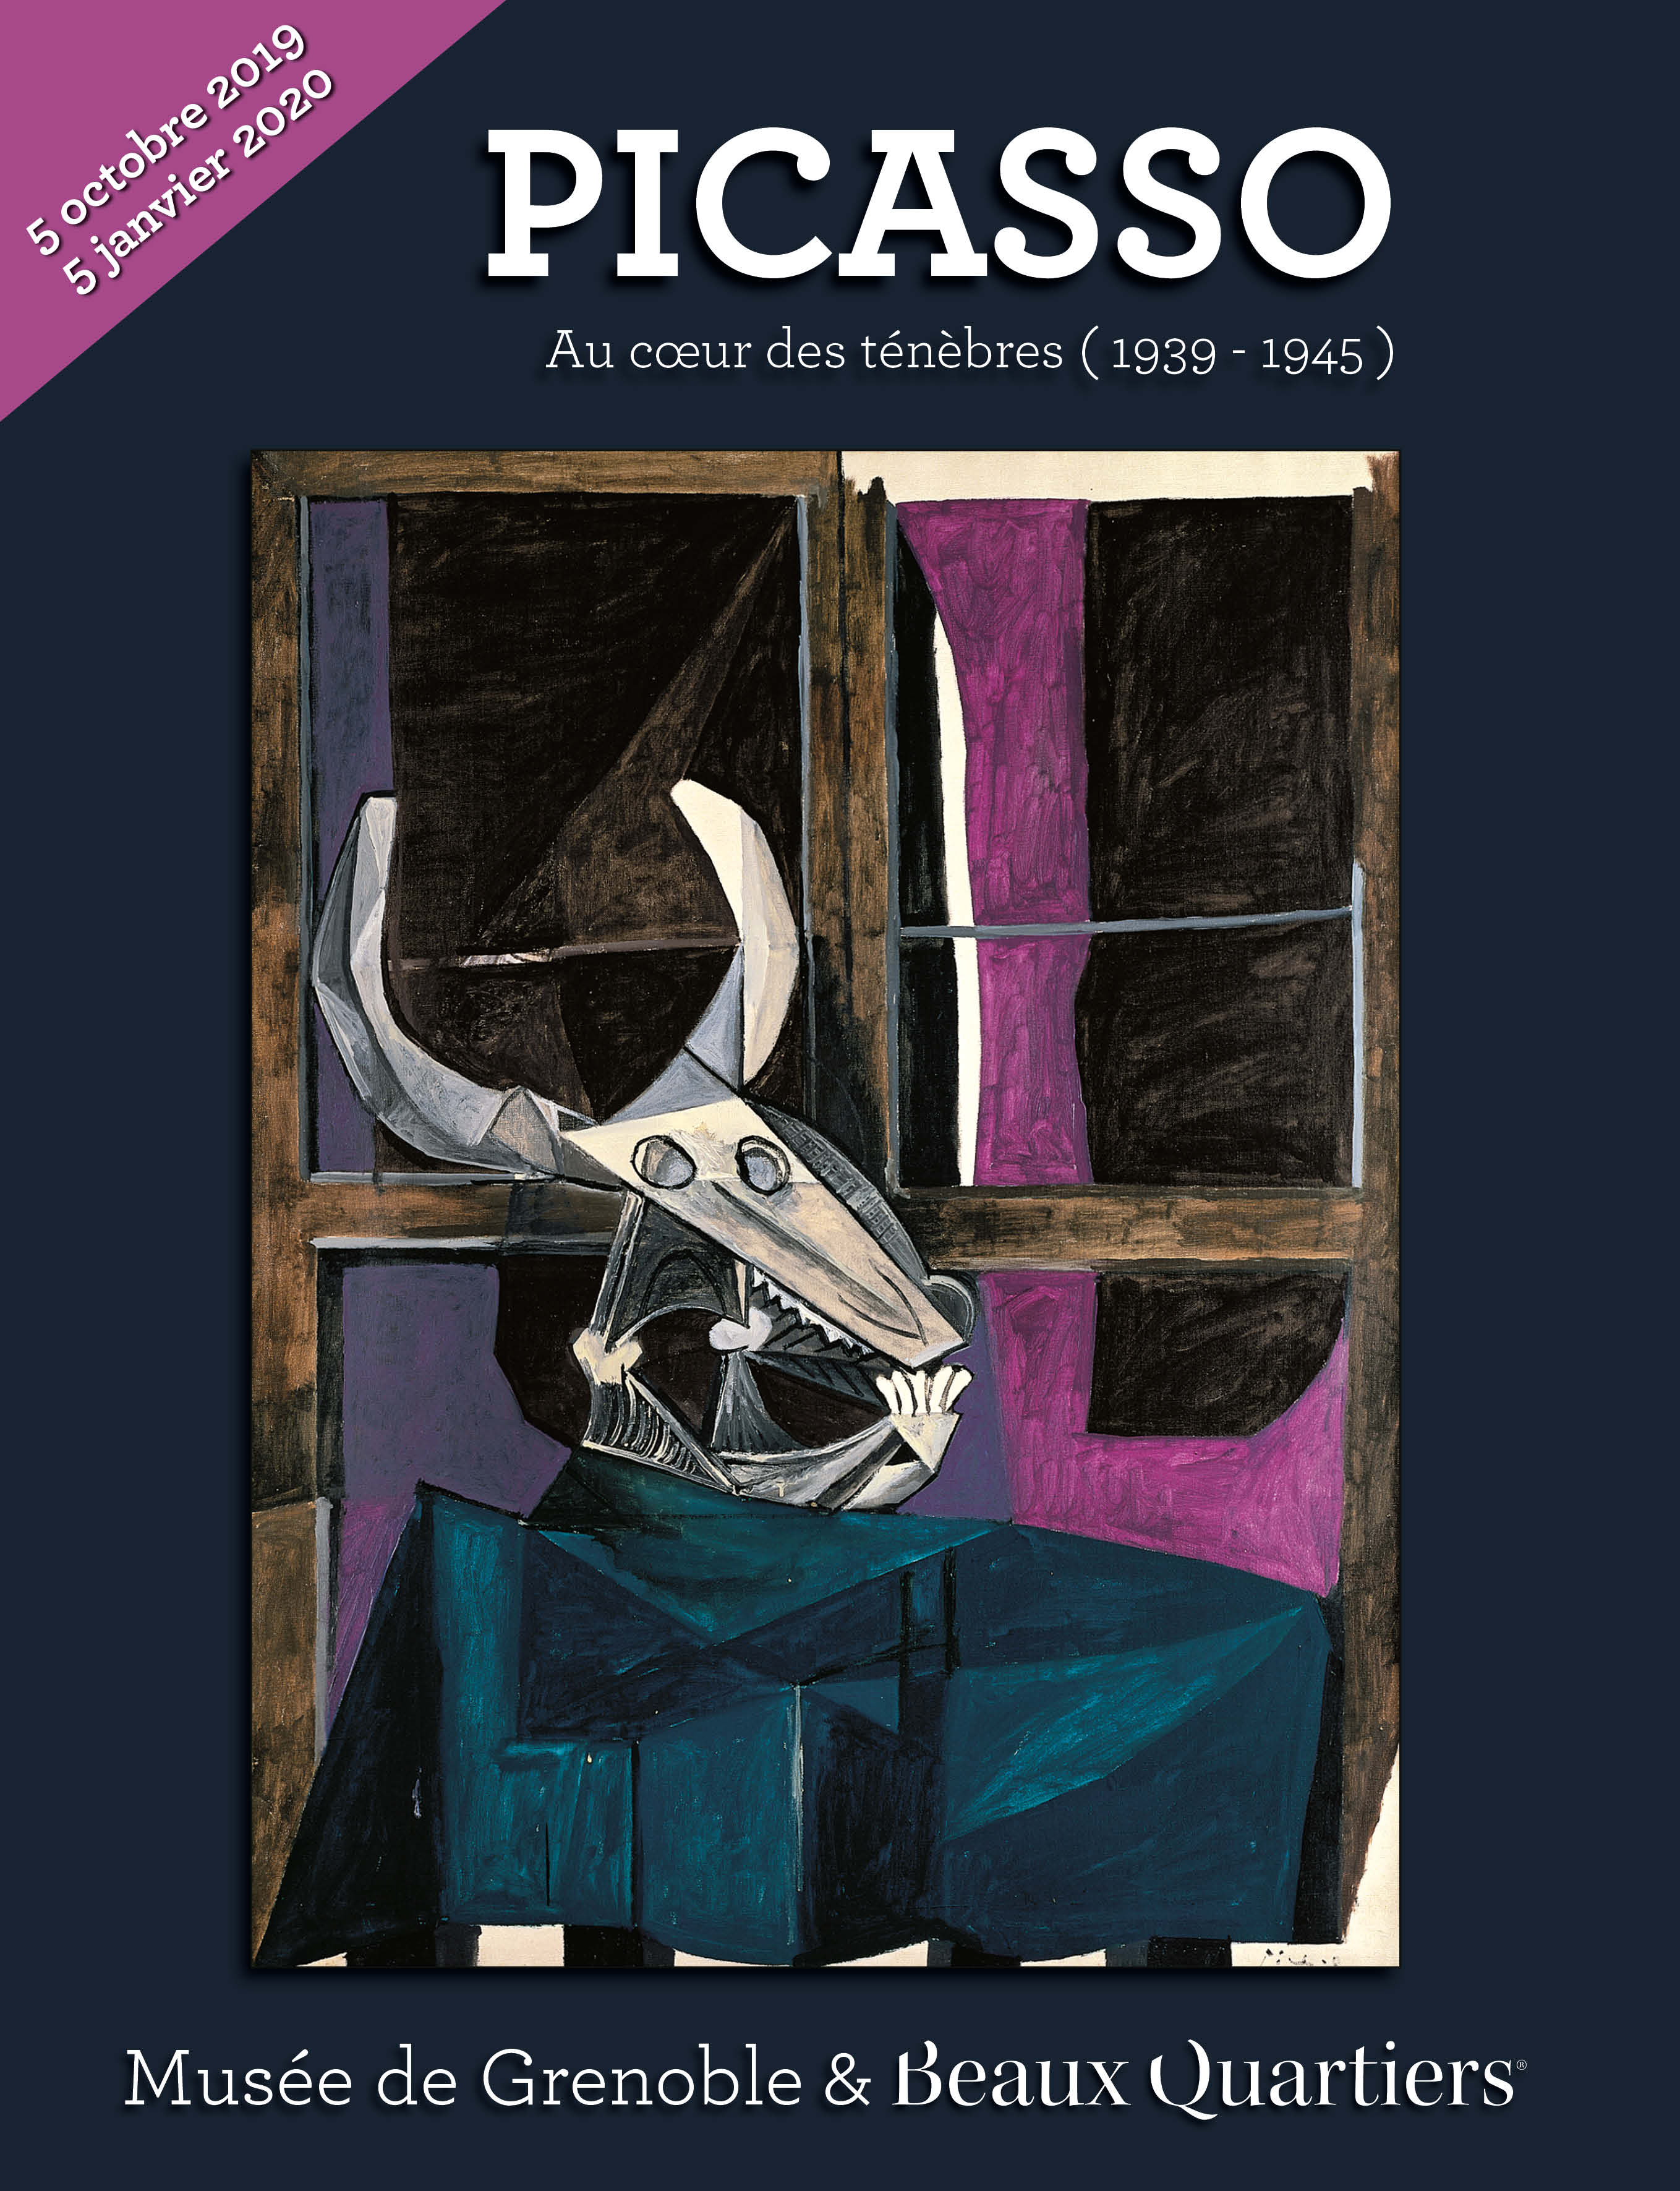 Picasso : au cœur des ténèbres, 2019